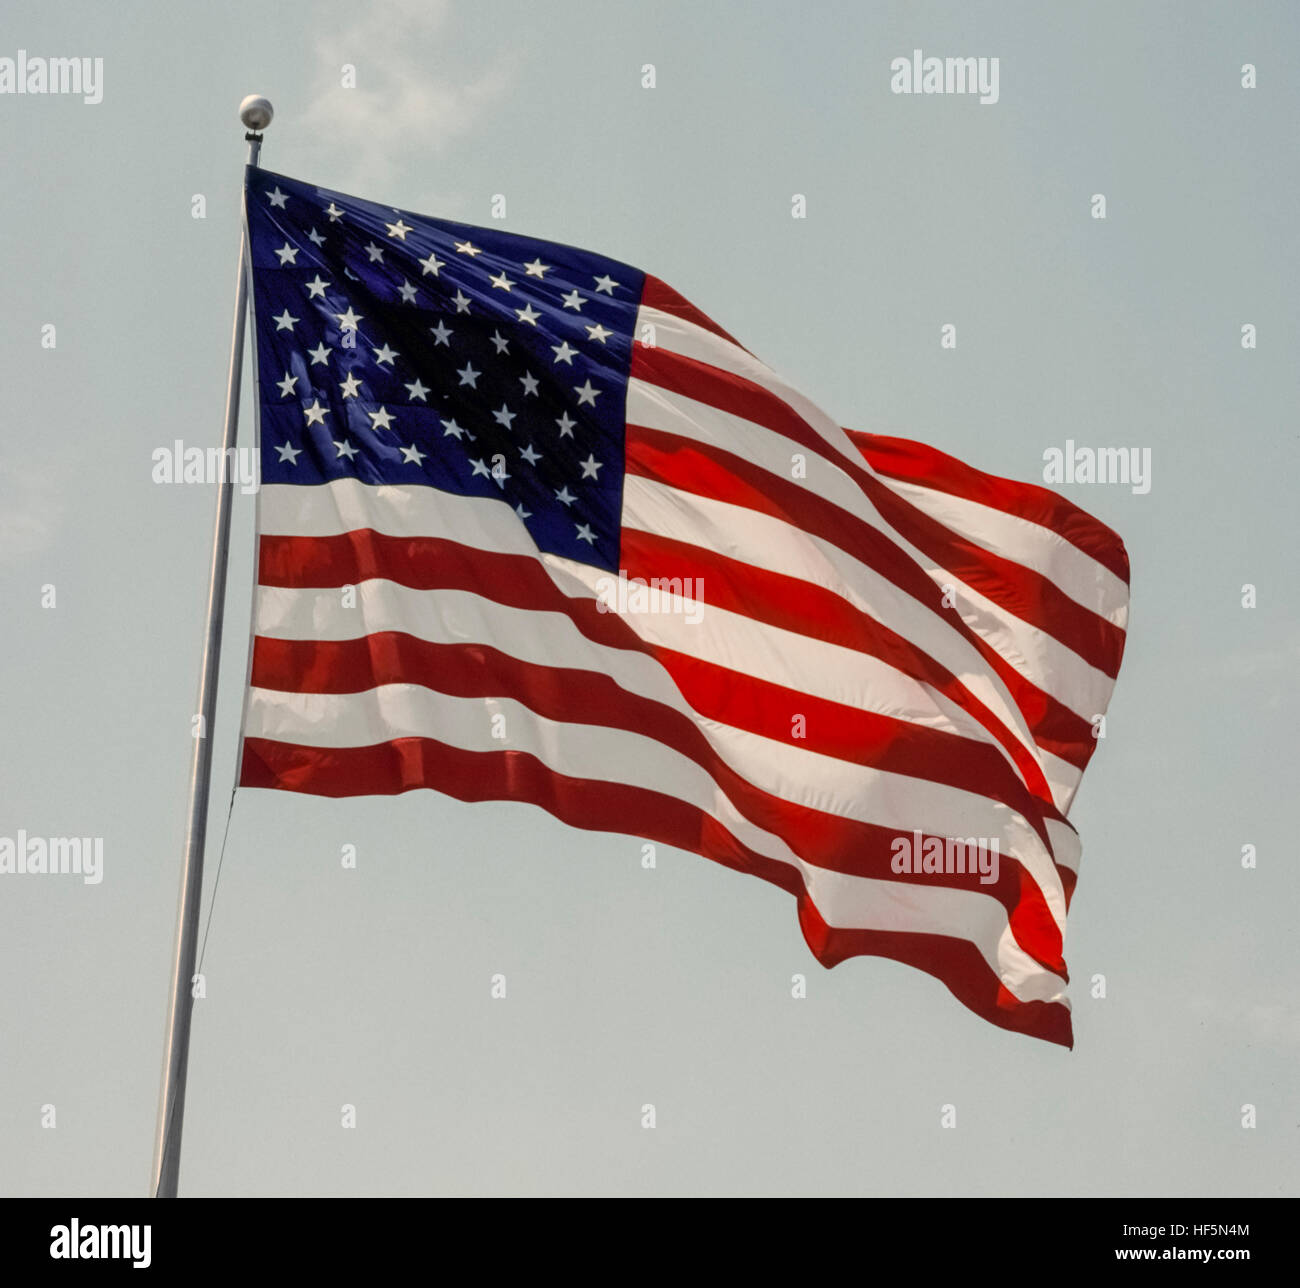 Die nationale Flagge der Vereinigten Staaten von Amerika bekannt verschieden als die amerikanische Flagge, den Sternen und Streifen, Old Glory und Star-Spangled Banner. Die 50 fünfzackigen kleinen weißen Sternen auf blauem rechteckige Feld repräsentieren die 50 Staaten der USA, während die 13 abwechselnd rote und weiße Querstreifen repräsentieren die 13 britischen Kolonien in Amerika, die Unabhängigkeit von Großbritannien erklärt. Im Jahre 1960 verabschiedete ist dies die 27. Version der US-Flagge, die zuerst im Jahre 1777 entworfen wurde. Stockfoto